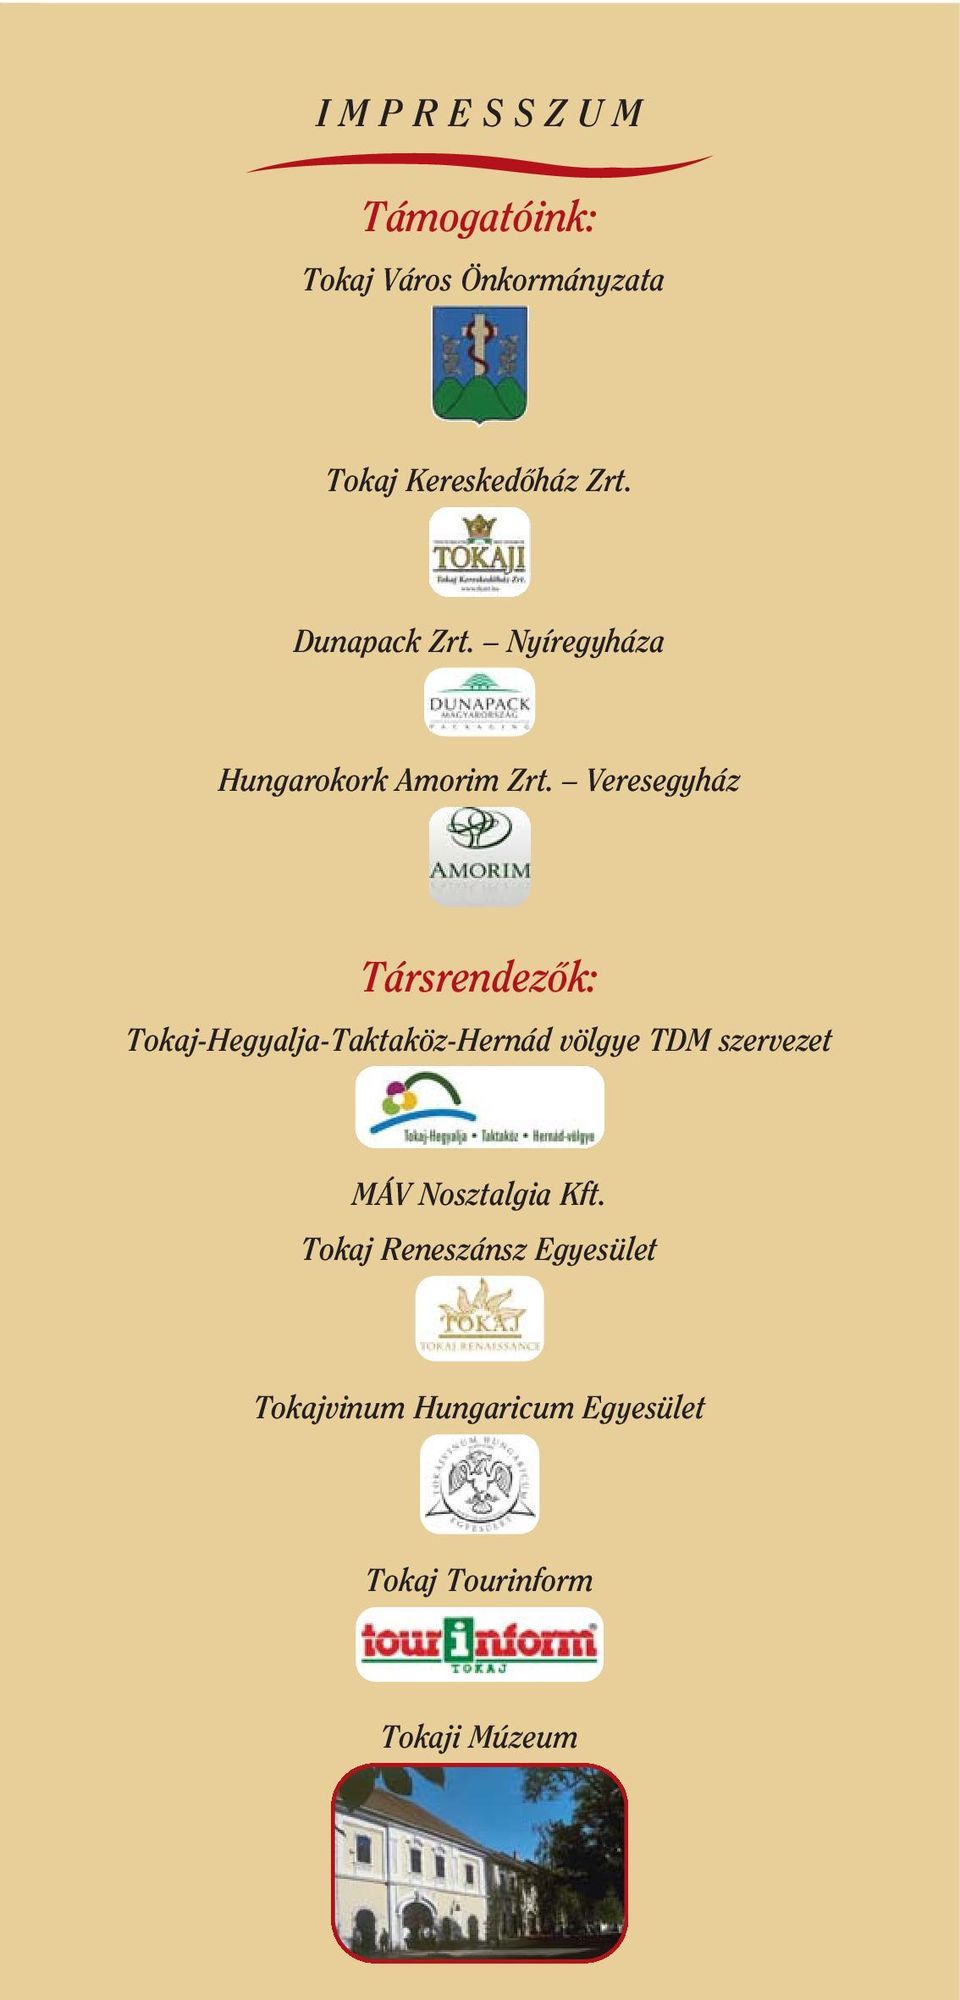 Veresegyház Társrendezôk: Tokaj-Hegyalja-Taktaköz-Hernád völgye TDM szervezet